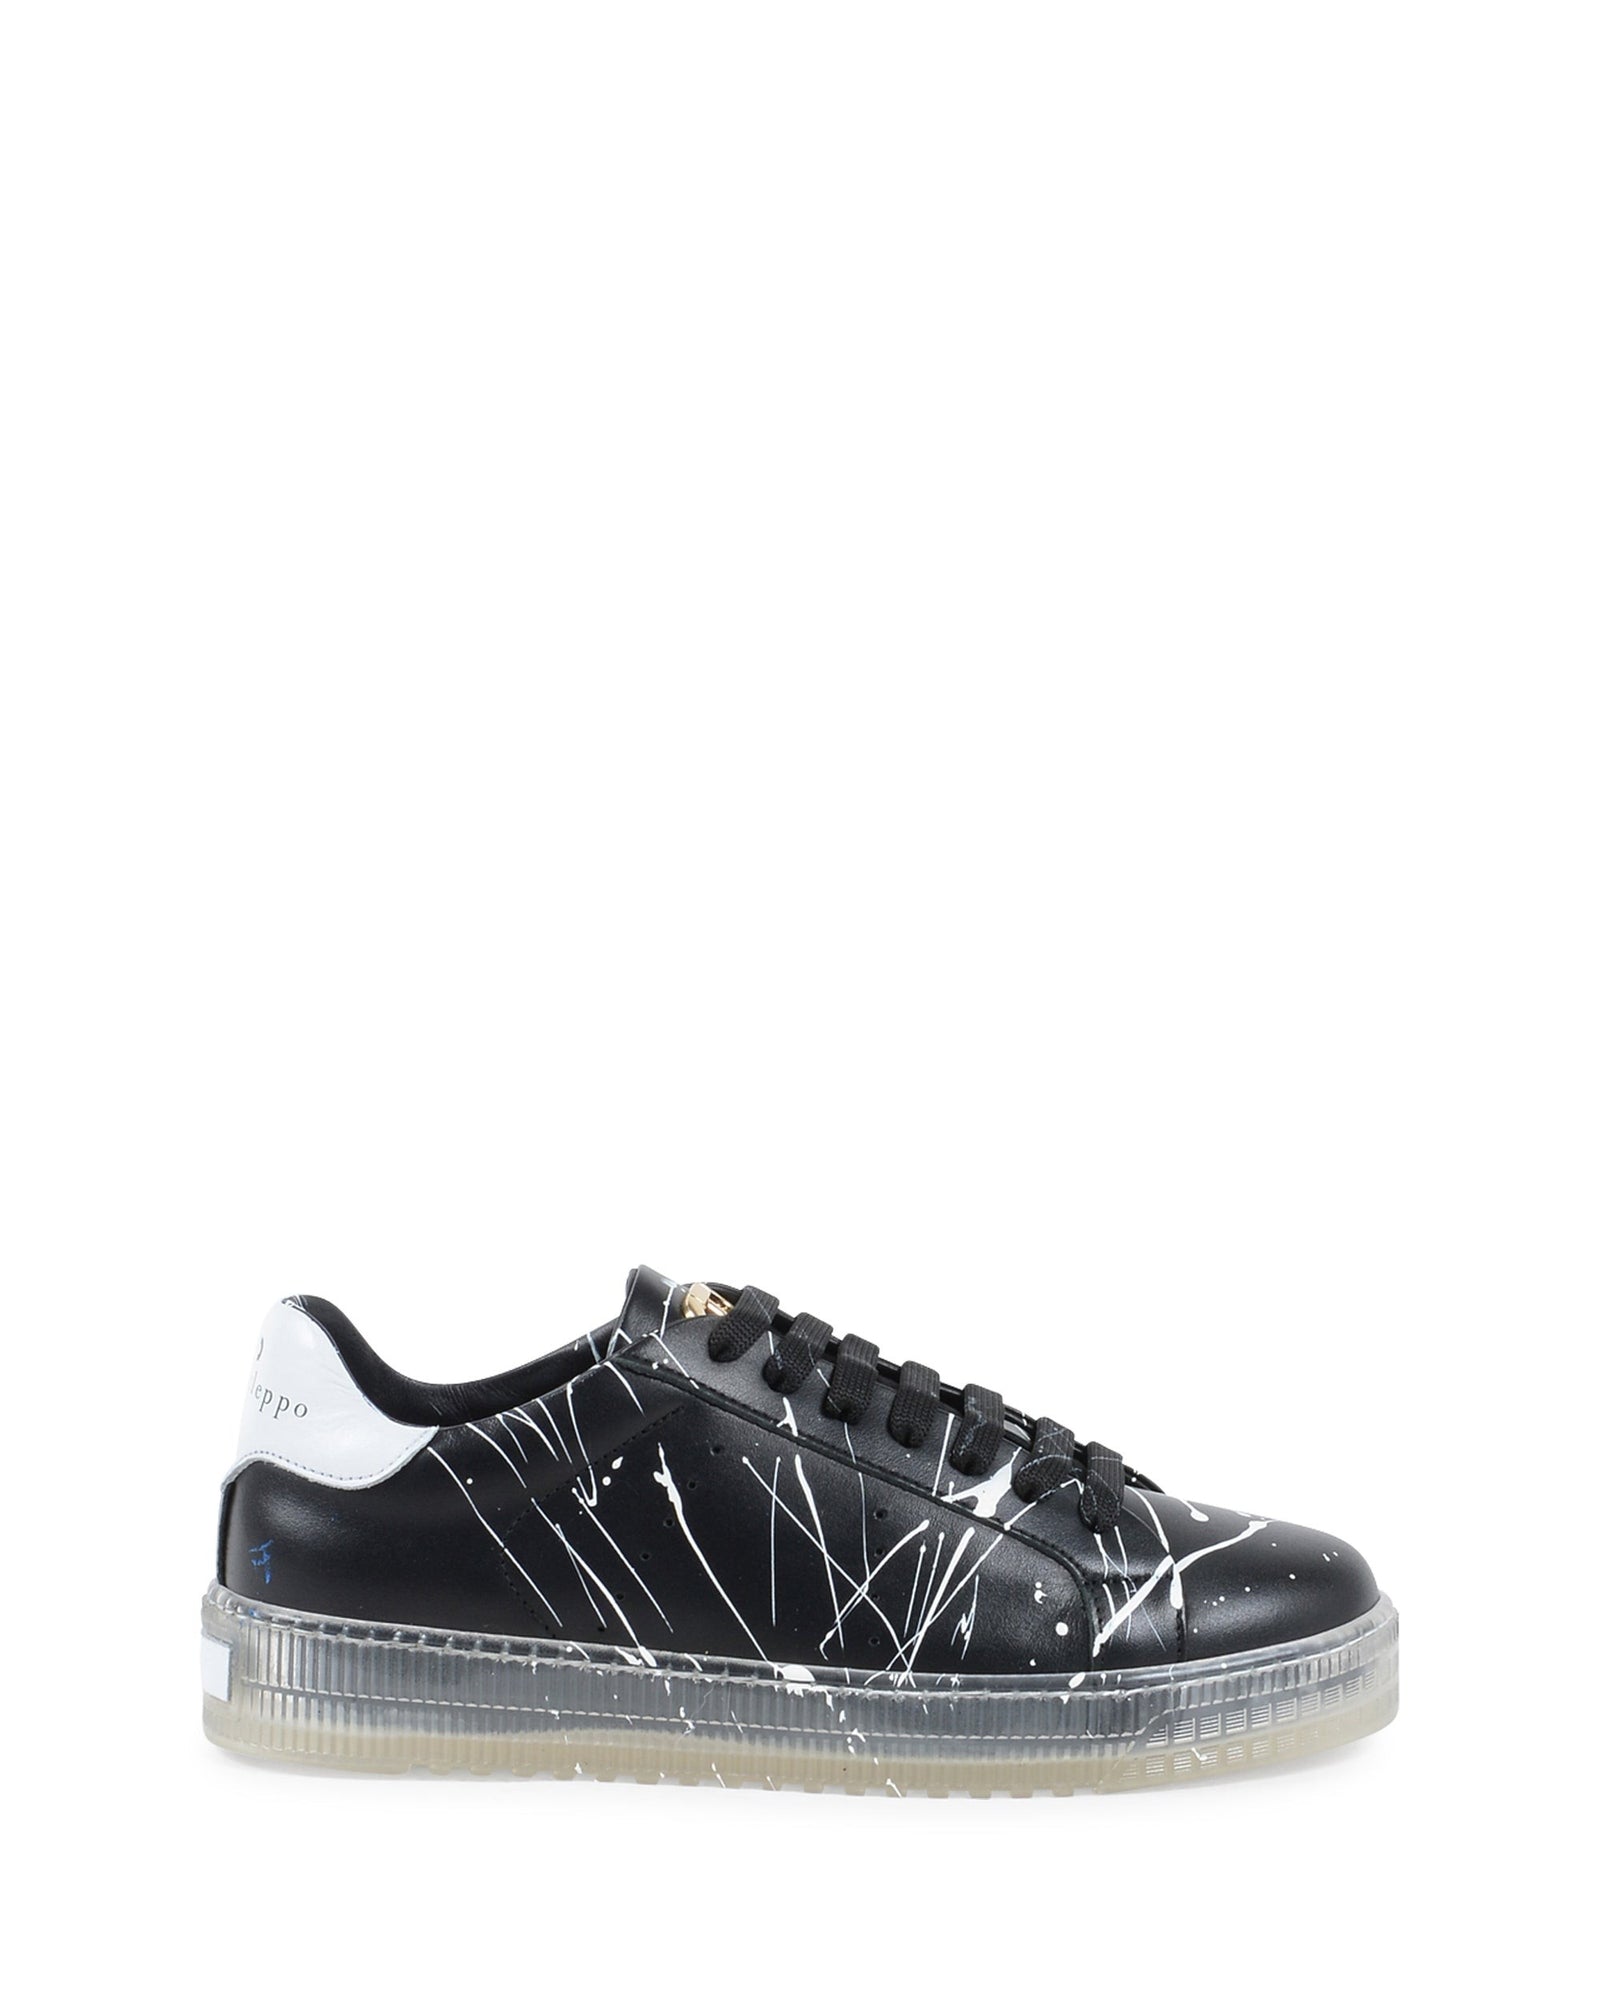 Splatter Sneaker - Black White